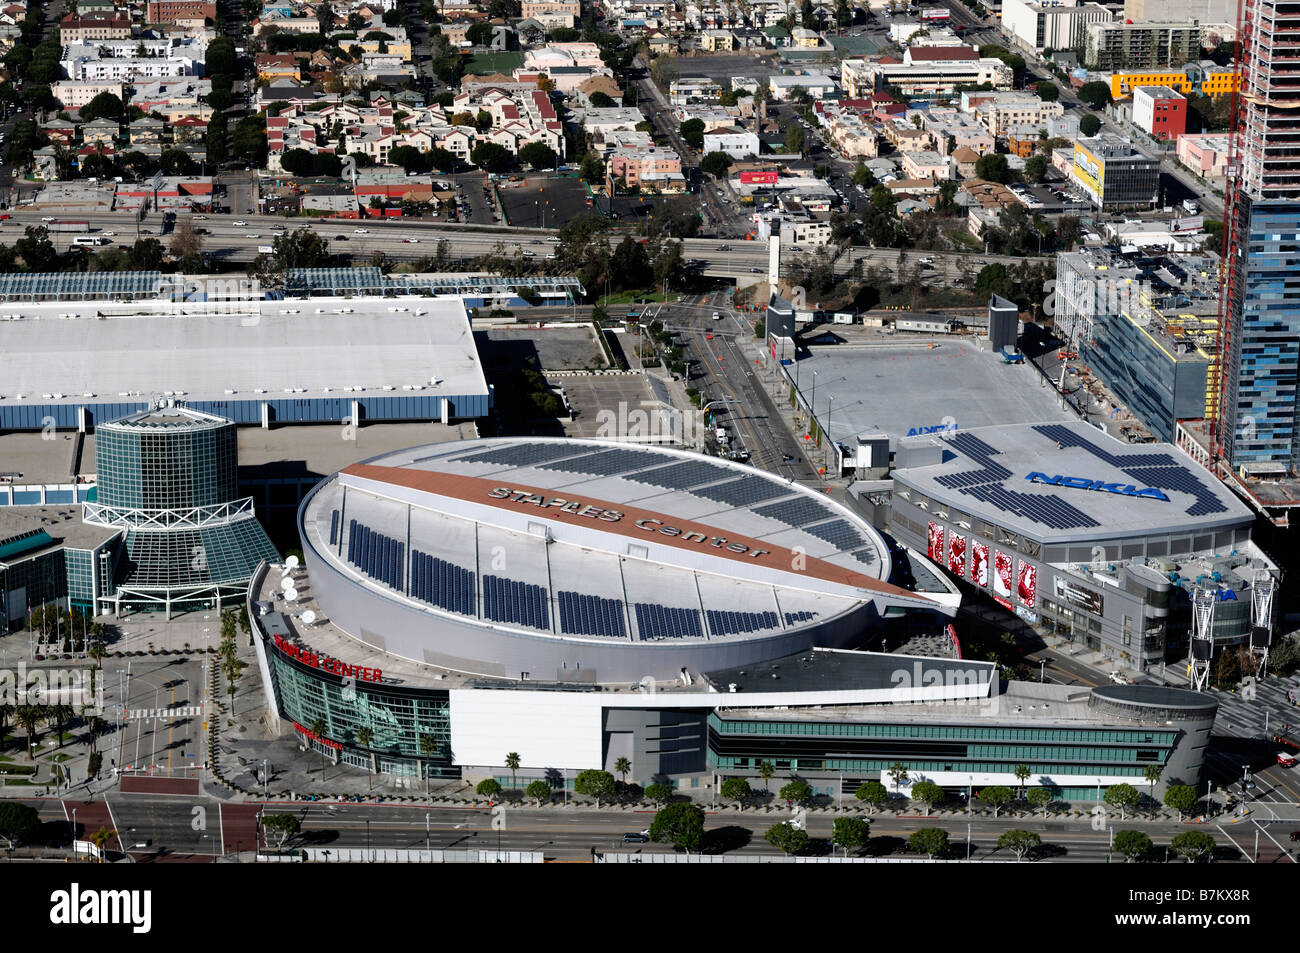 Staples center center Vue aérienne des Lakers de Los Angeles Clippers rois sports arena stadium accueil hockey fans attraction Banque D'Images